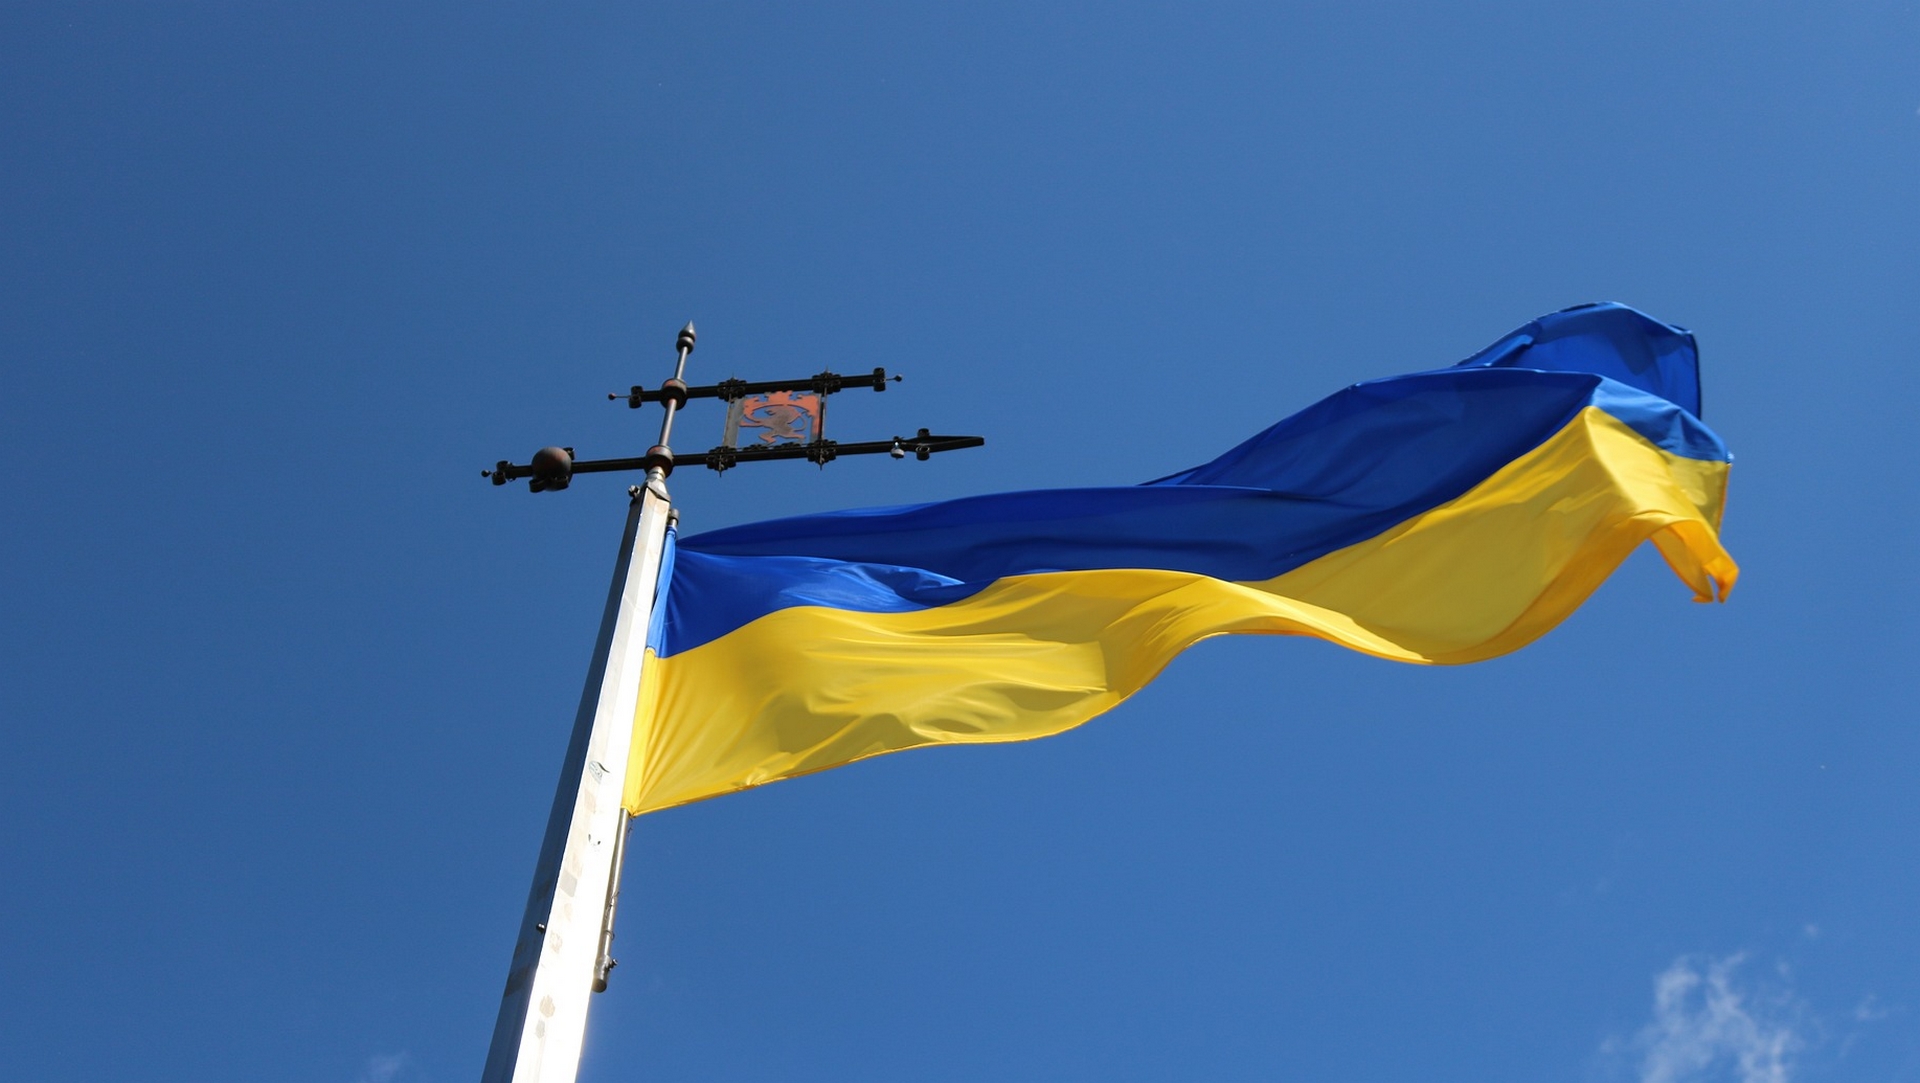 Bleu et jaune les couleurs du drapeau ukrainien | Pixabay CC-BY-SA-2.0